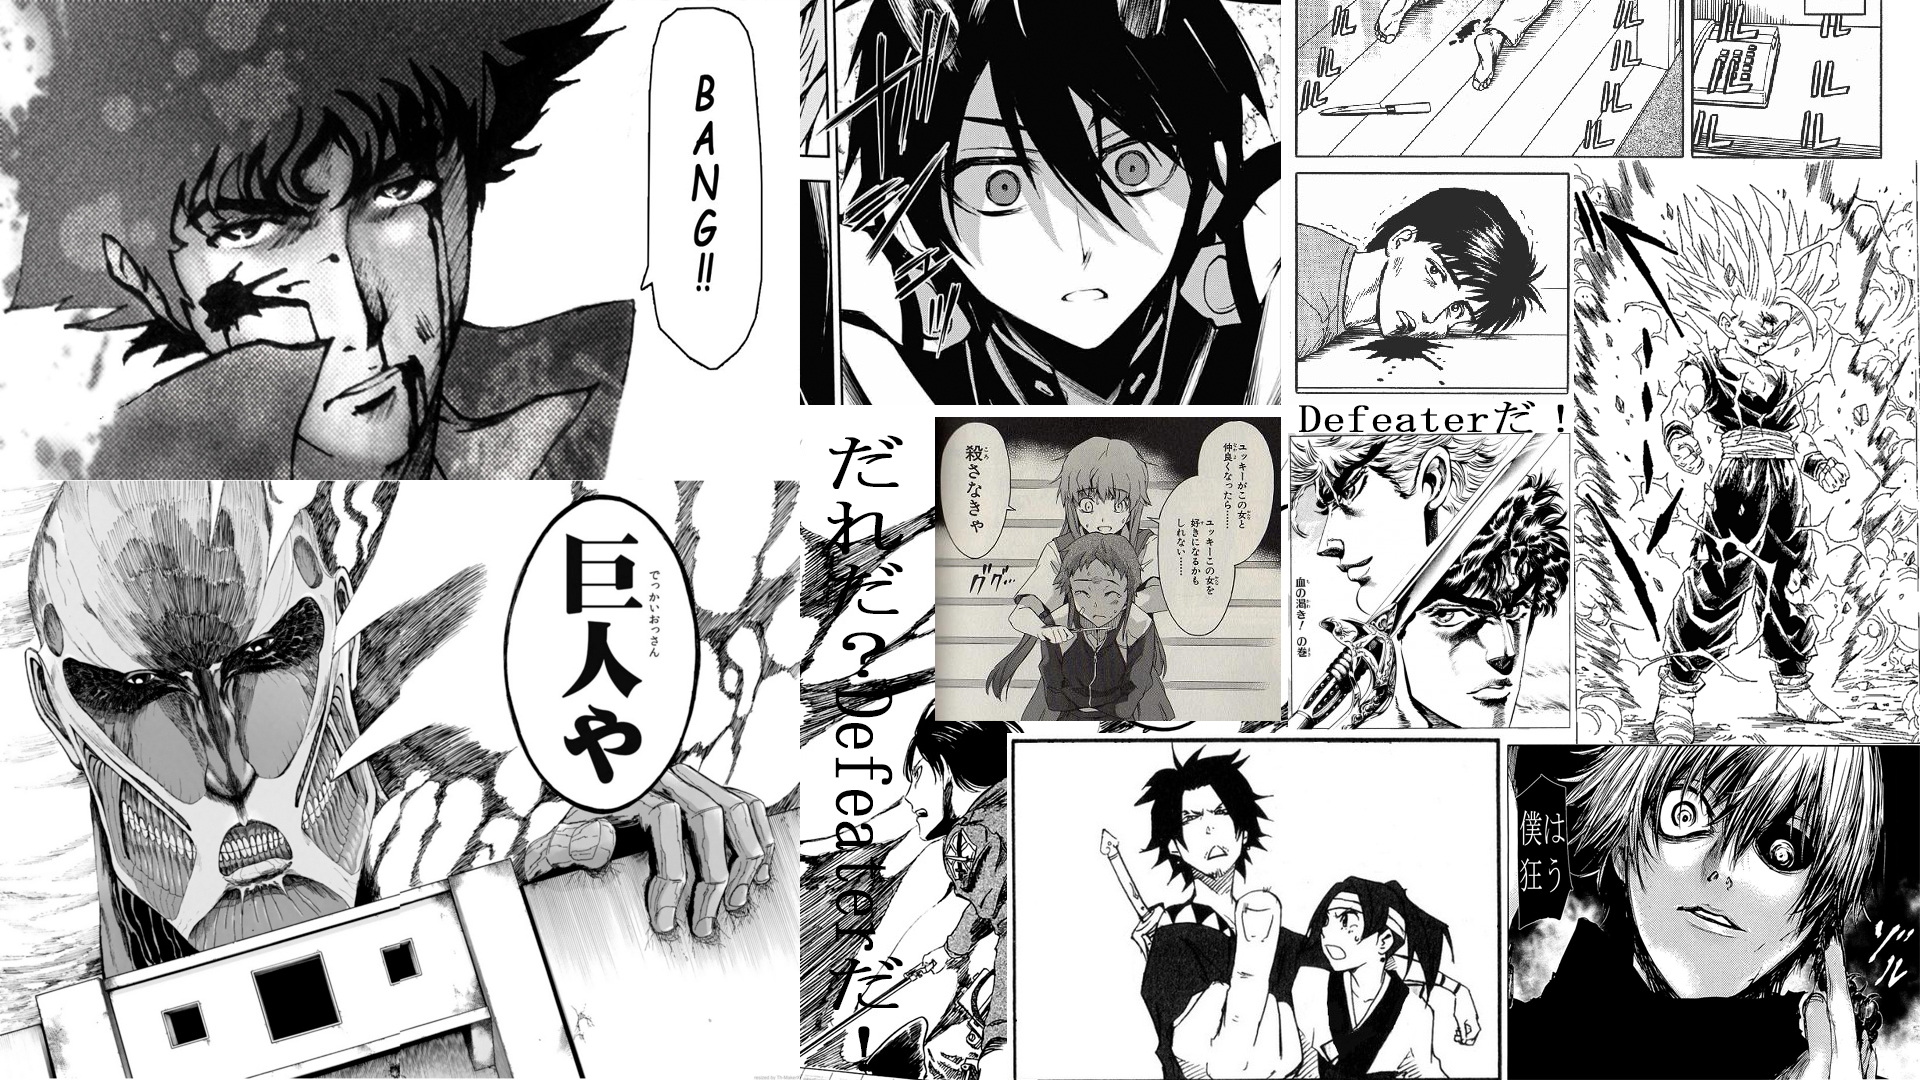 Manga Panels wallpaper by YuiYuukiKirigaya on DeviantArt